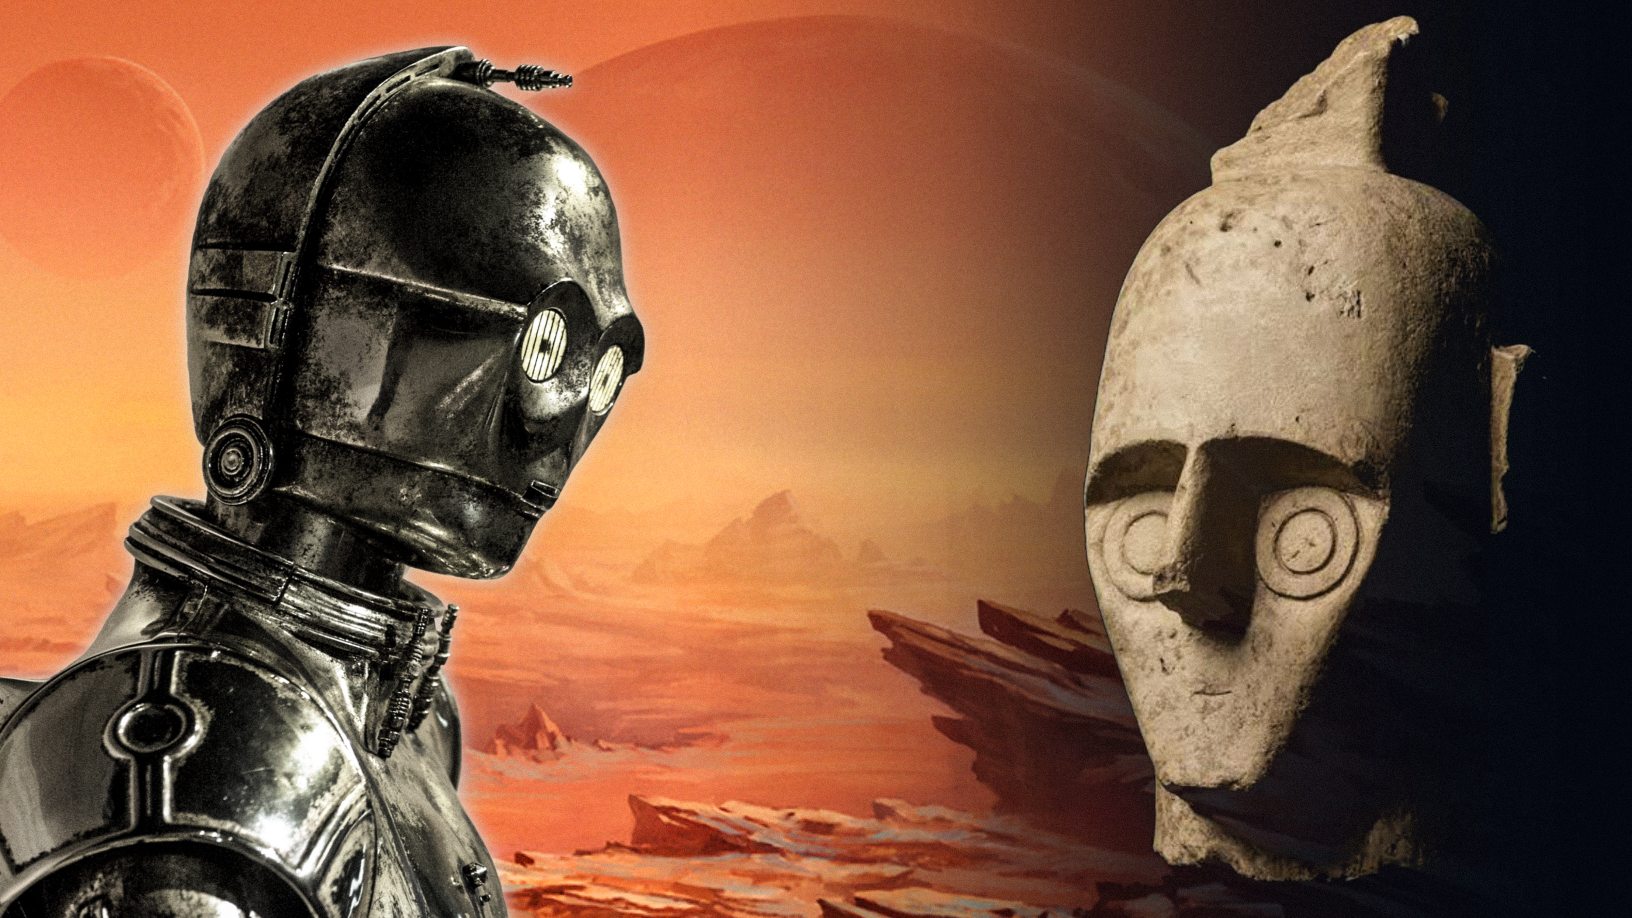 Die Giganten von Mont'e Prama: Außerirdische Roboter vor Tausenden von Jahren? 1